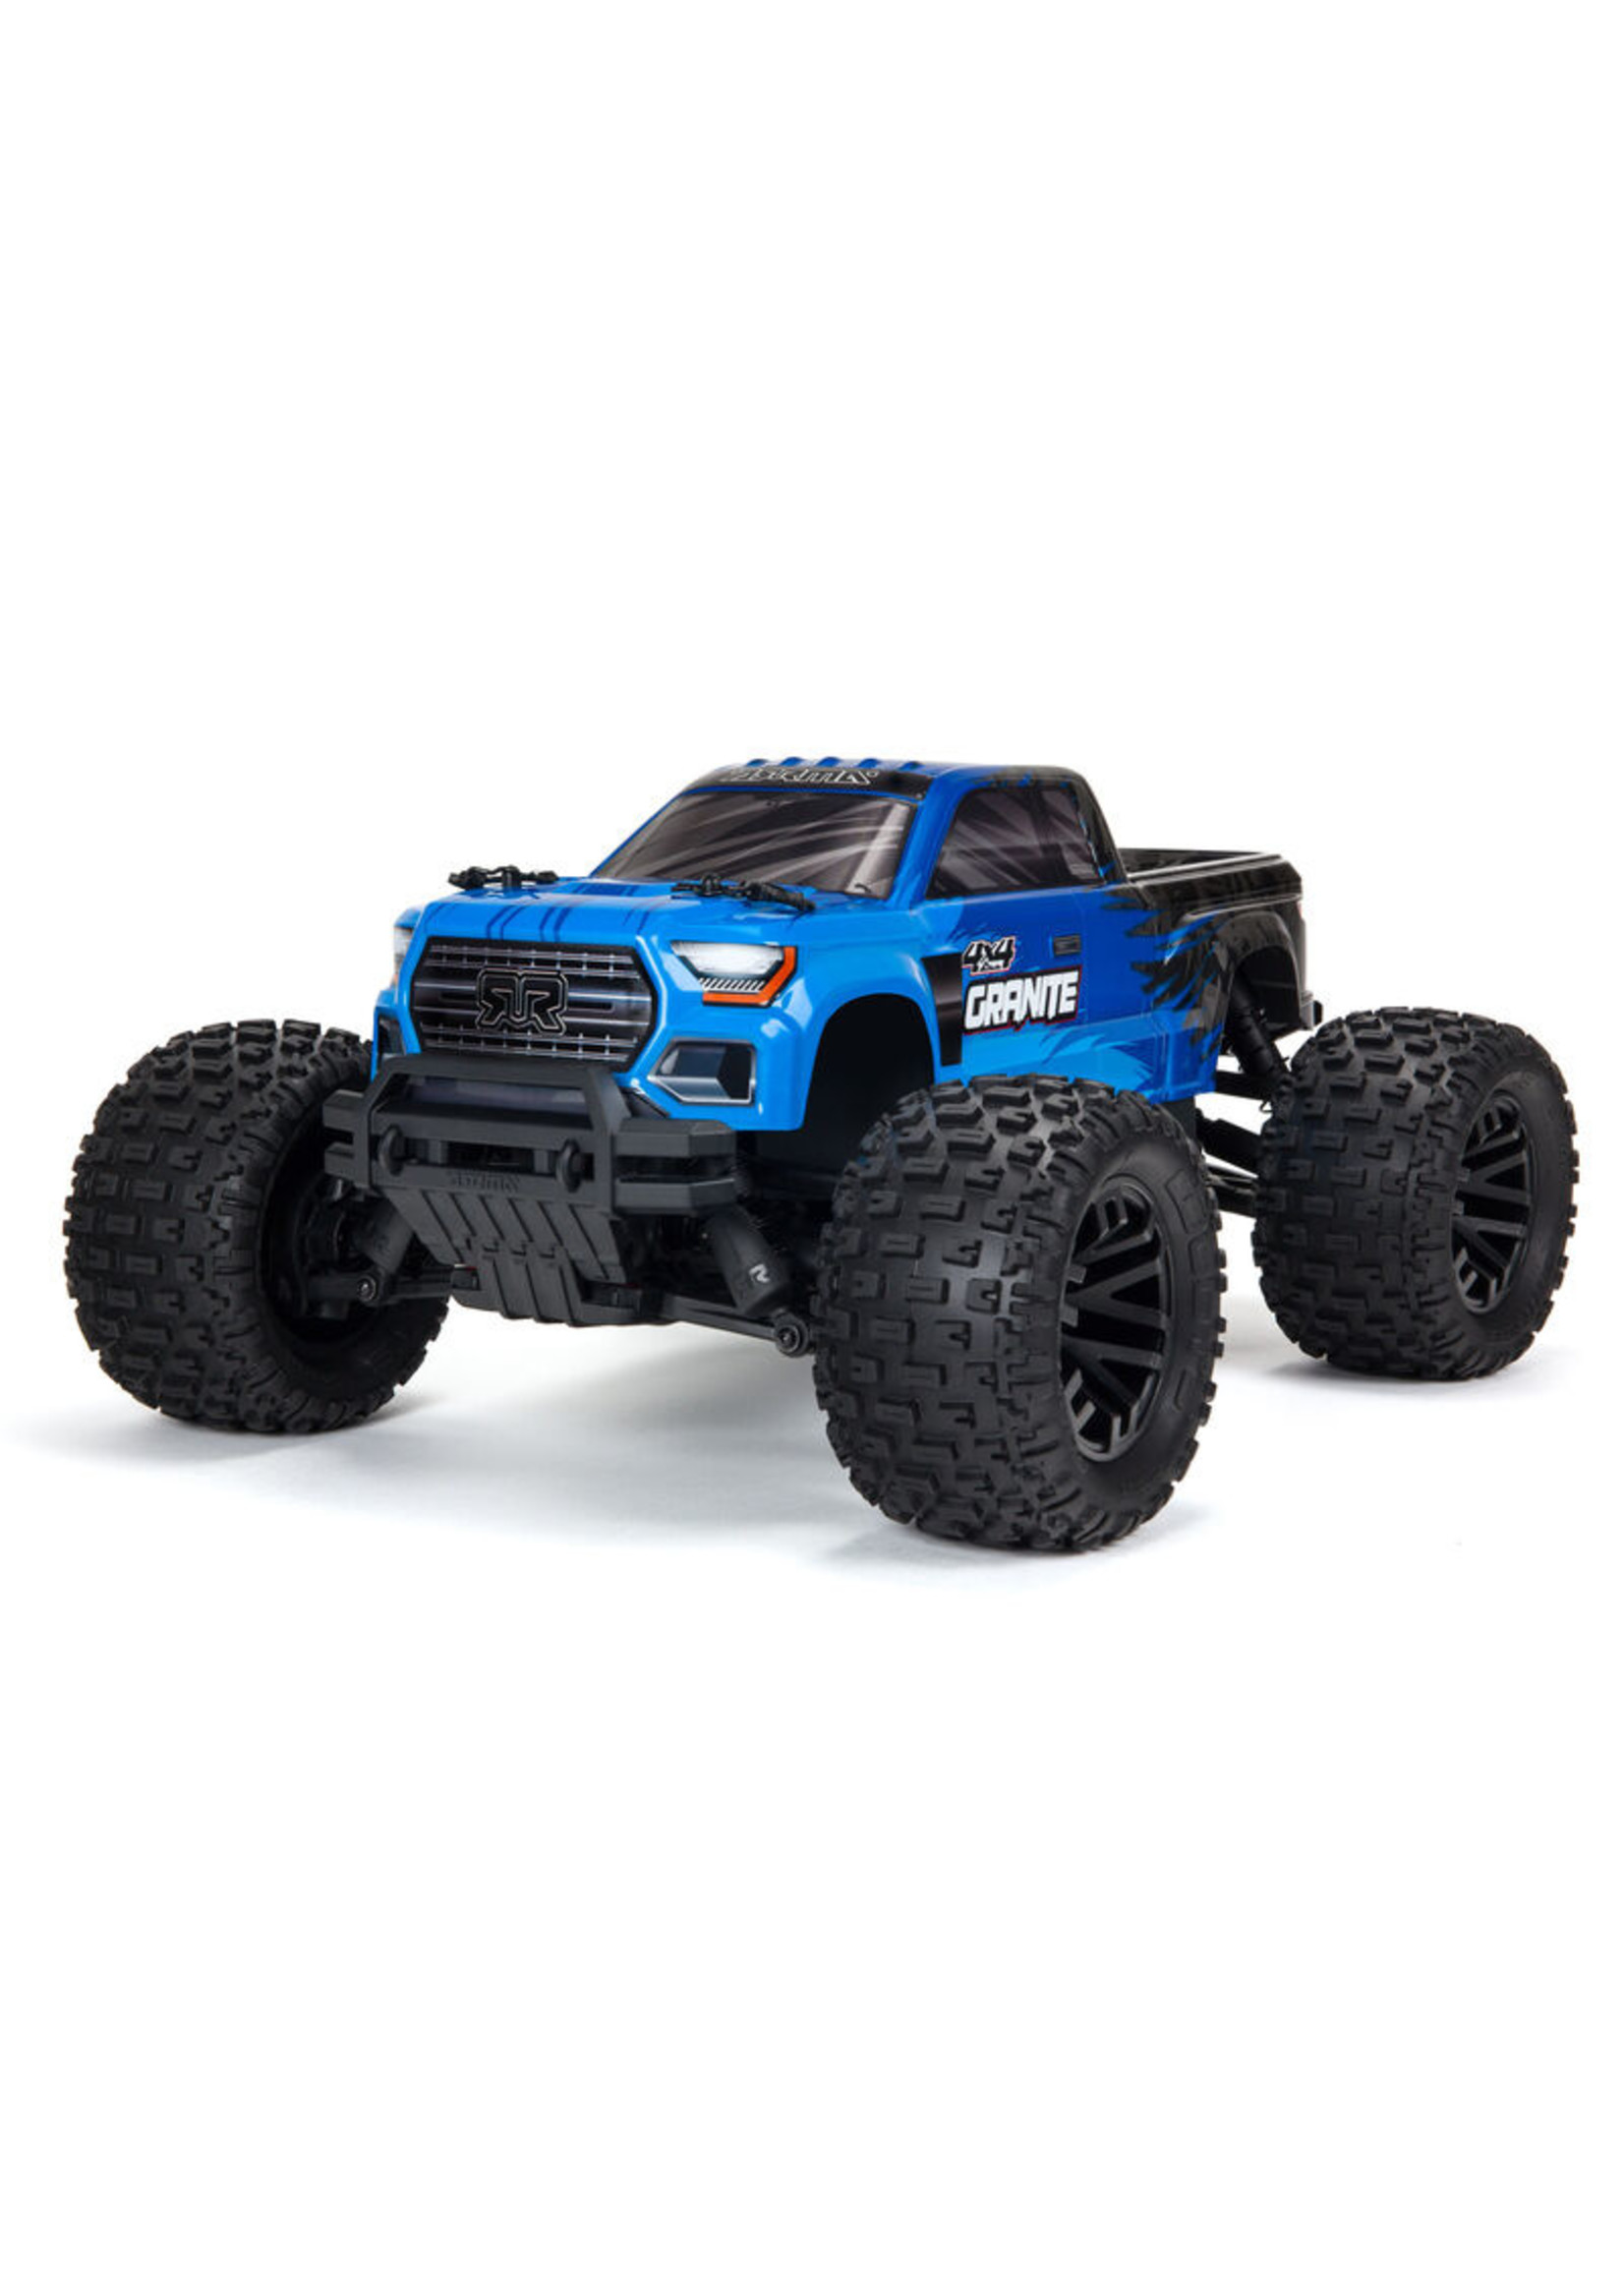 Arrma 1/10 GRANITE 4X4 V3 MEGA 550 Brushed Monster Truck RTR - Blue